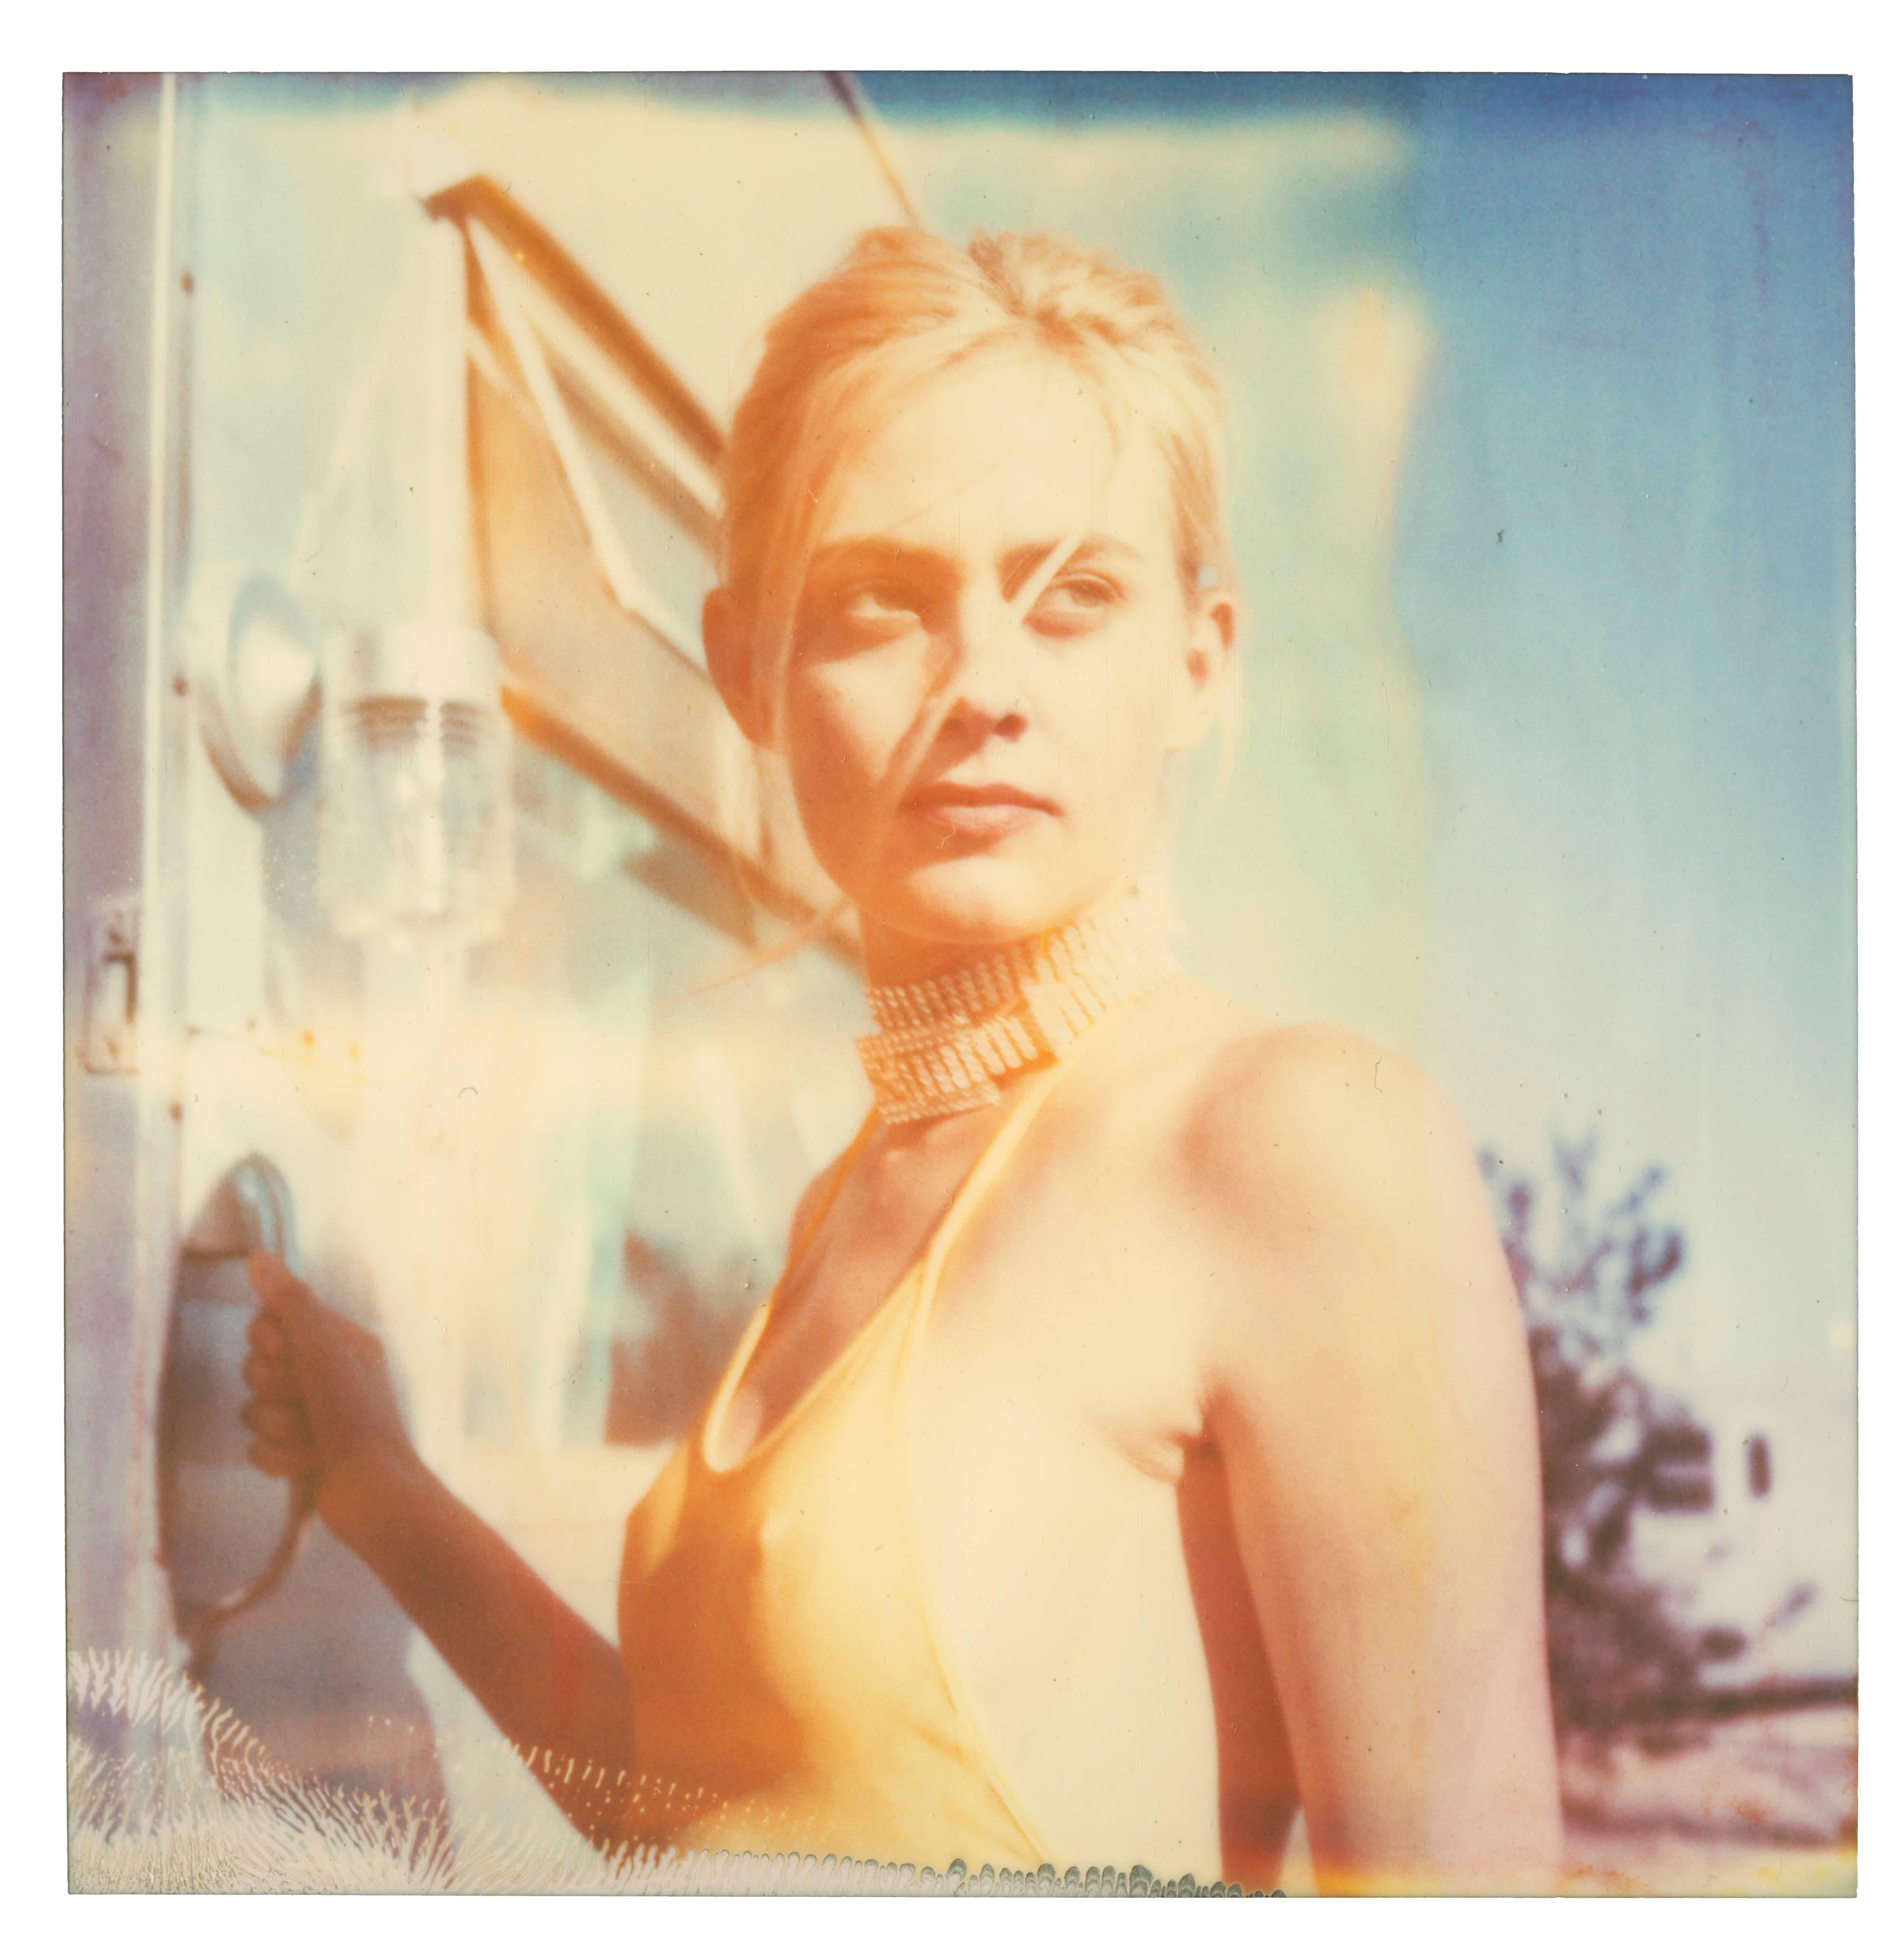 Stefanie Schneider Portrait Photograph - Contemporary, 21st Century, Polaroid, Figurative Photography, Woman, Schneider, 